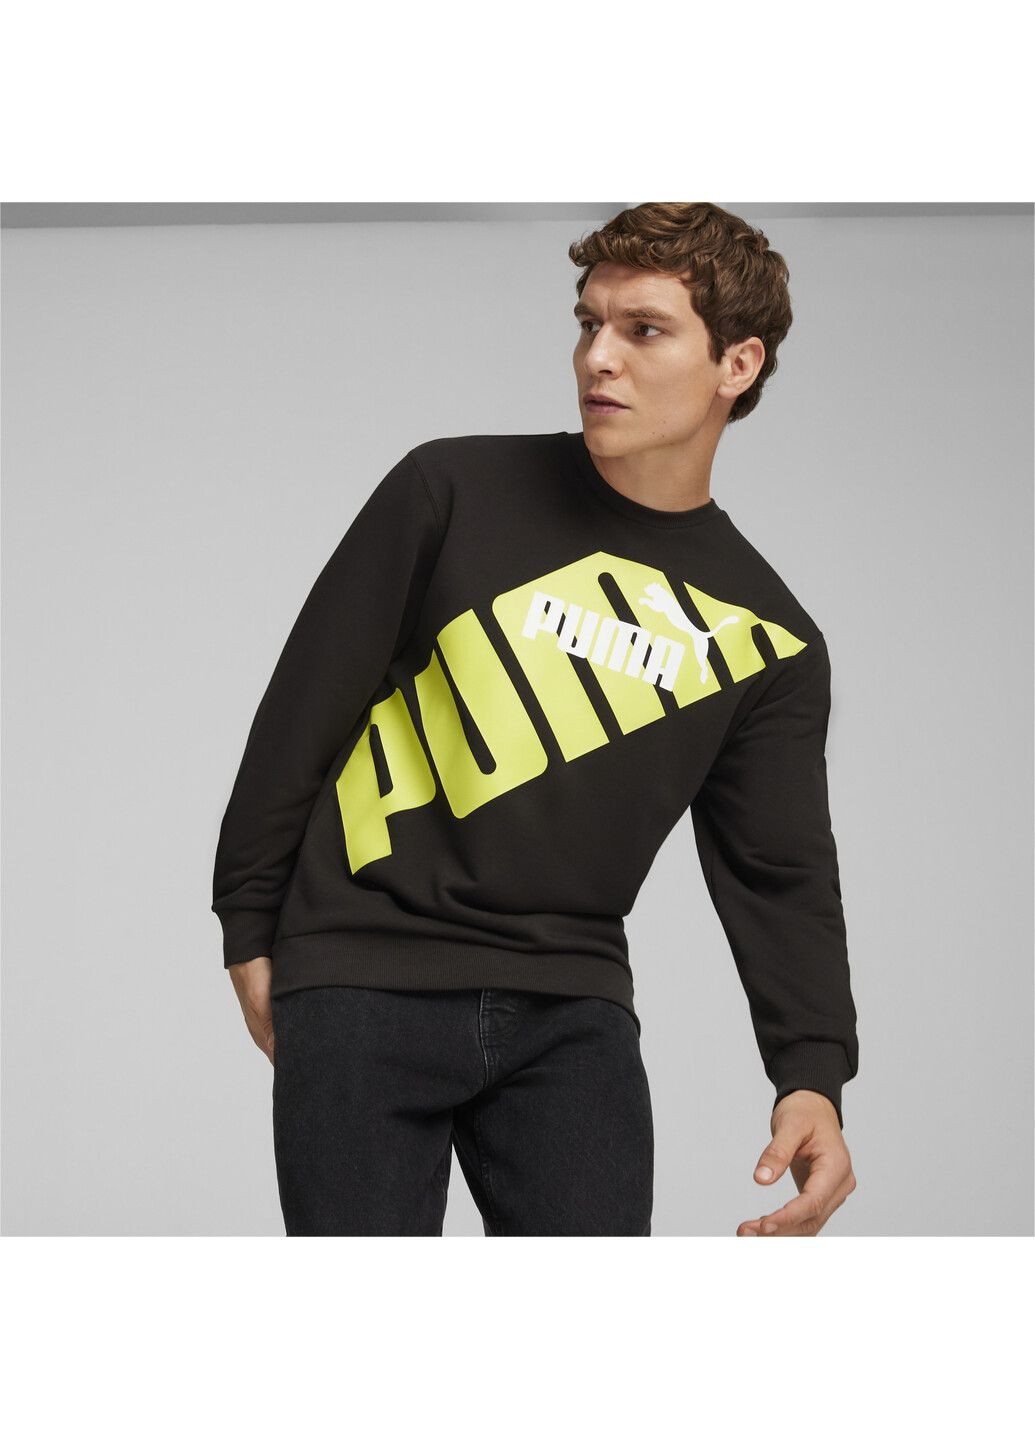 Черная демисезонная свитшот power men's graphic sweatshirt Puma